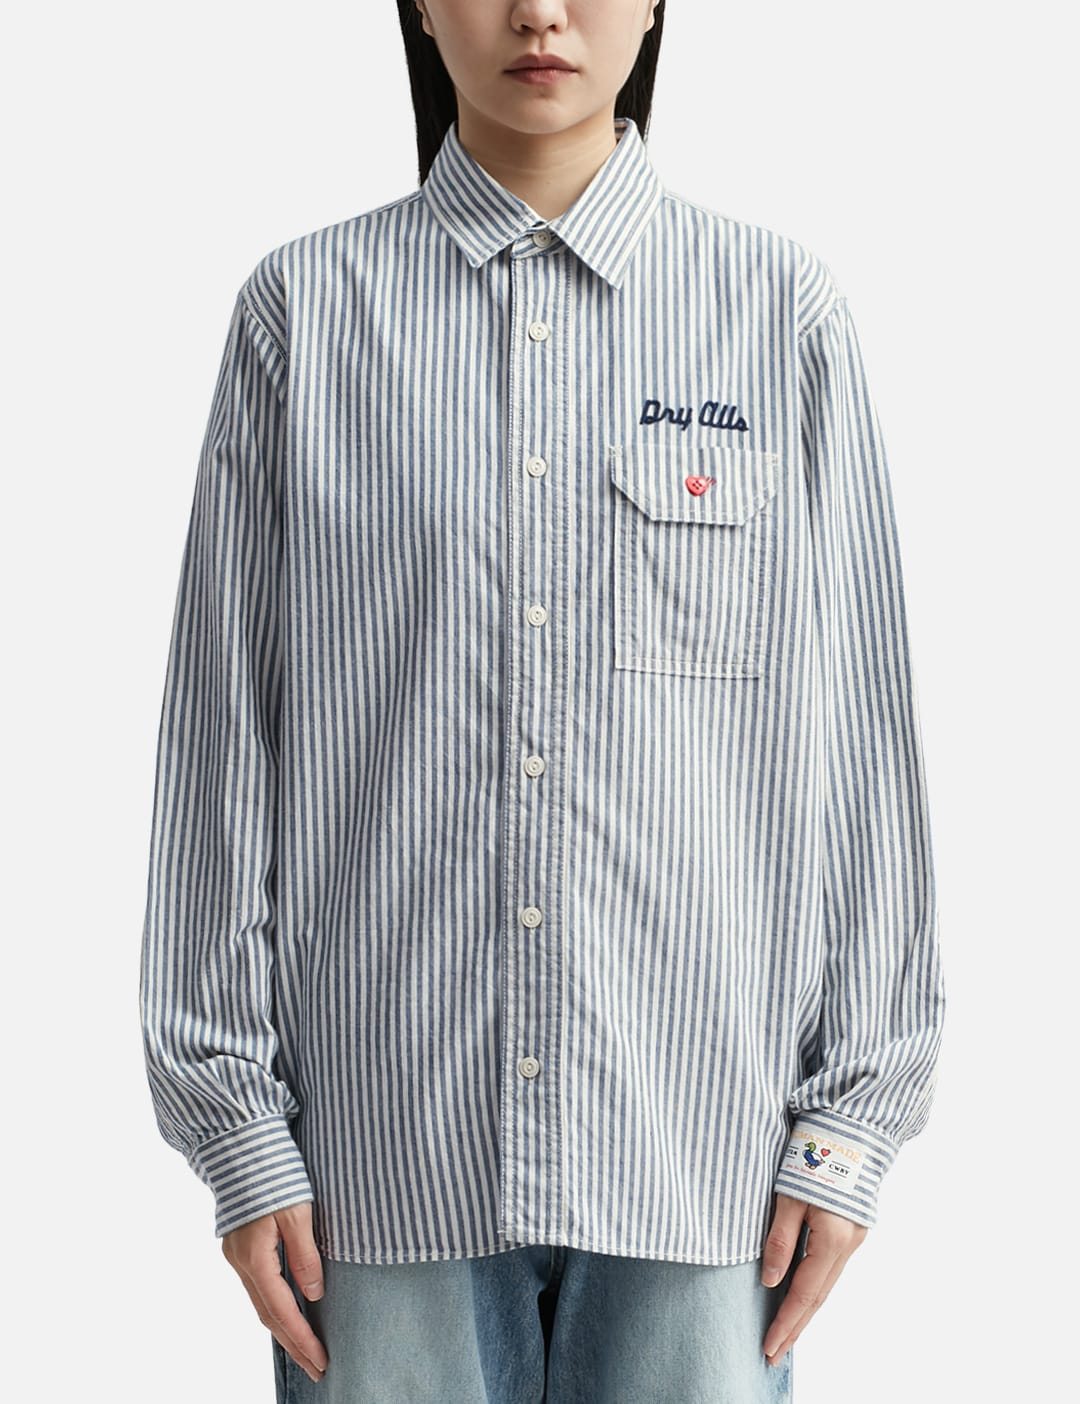 18,800円Human Made Striped Work Shirt L ワークシャツ